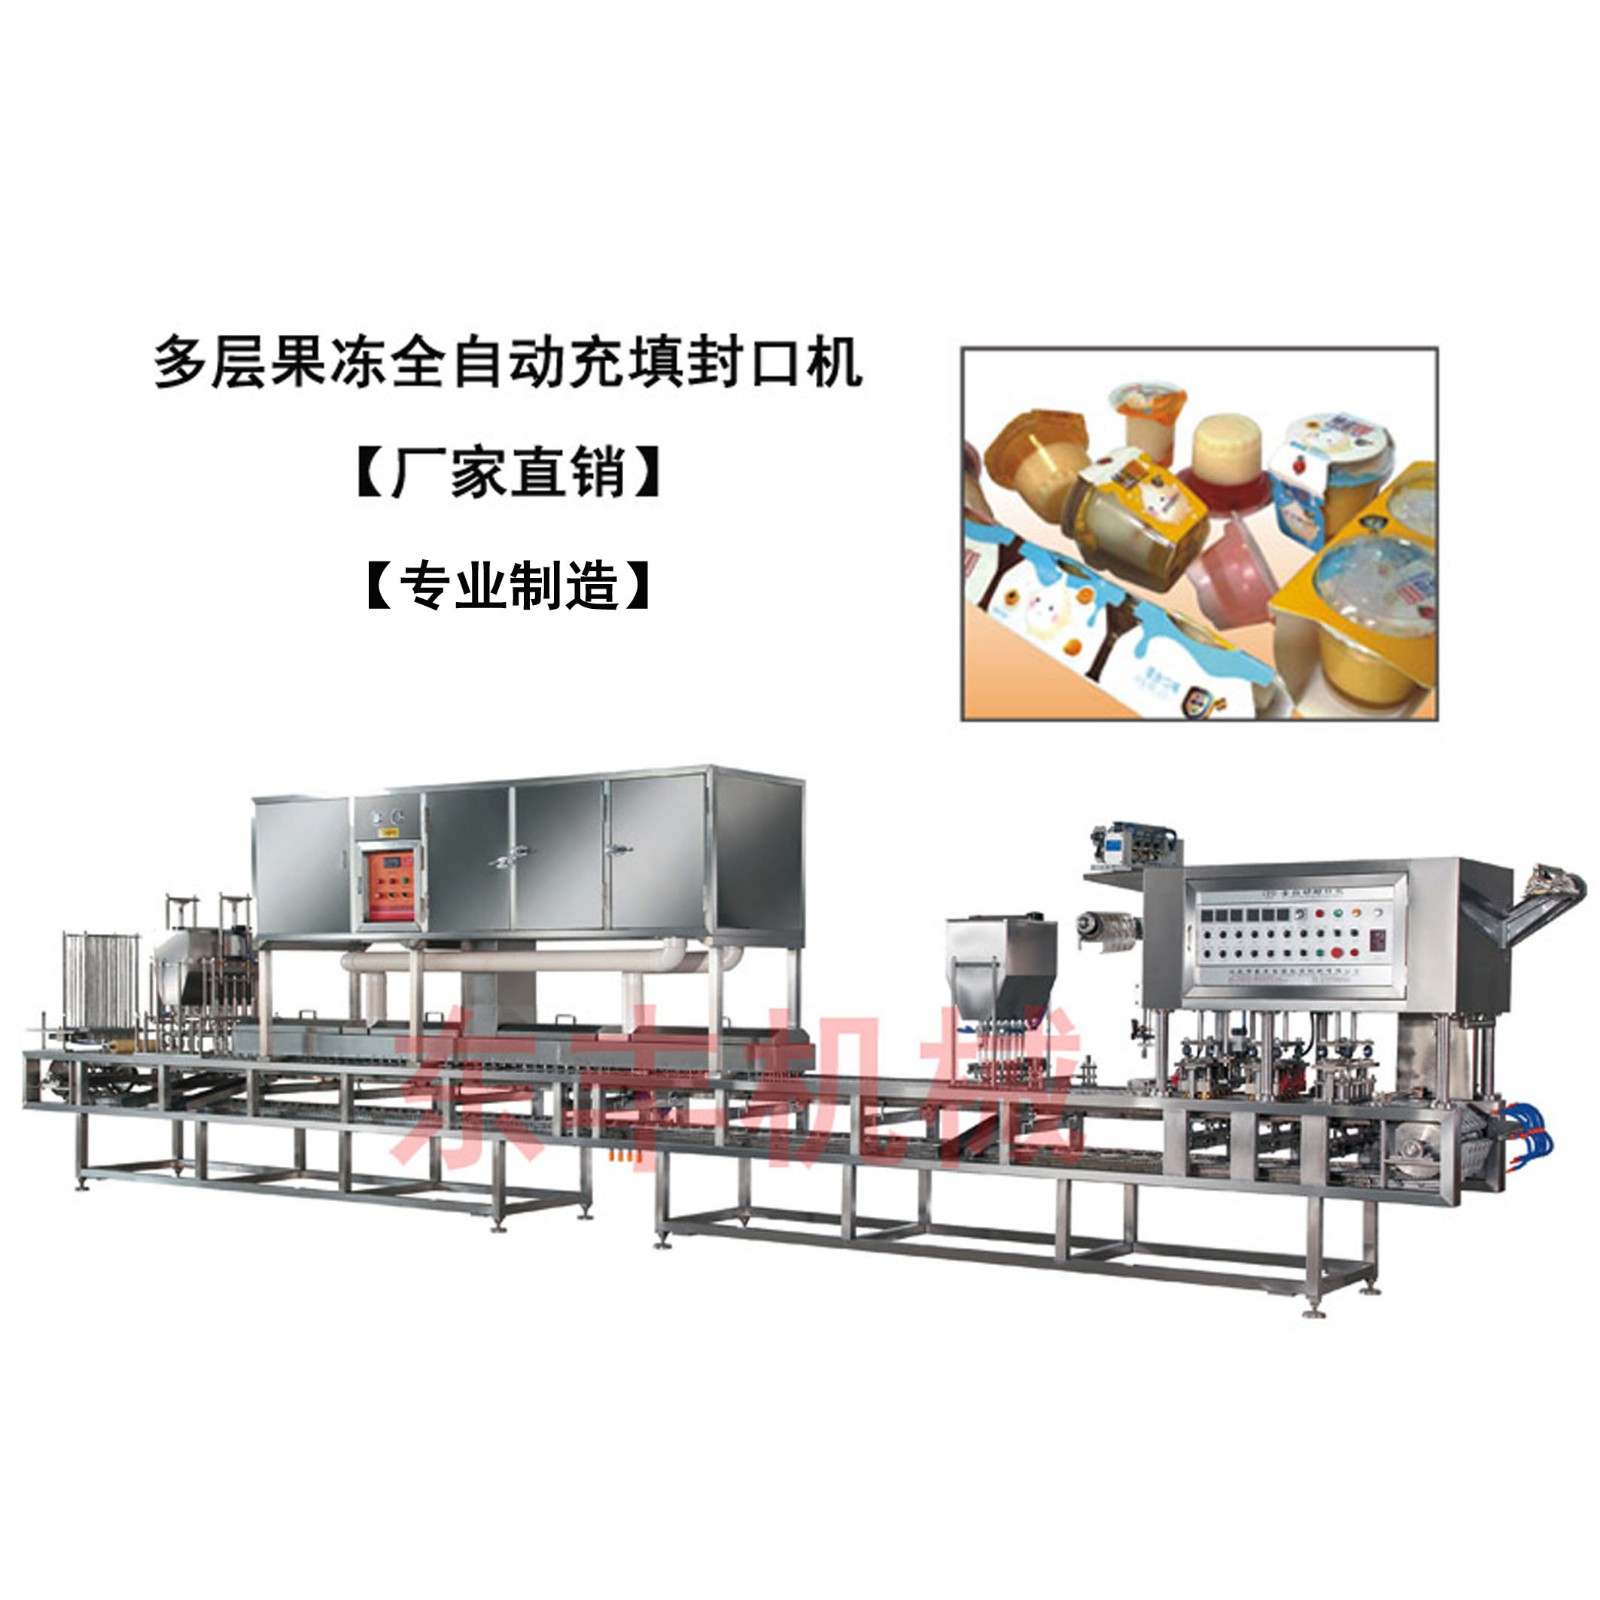 CFD多层果冻灌装封口机、3S2S多色果冻充填包装机、果冻封口机械、广东厂家